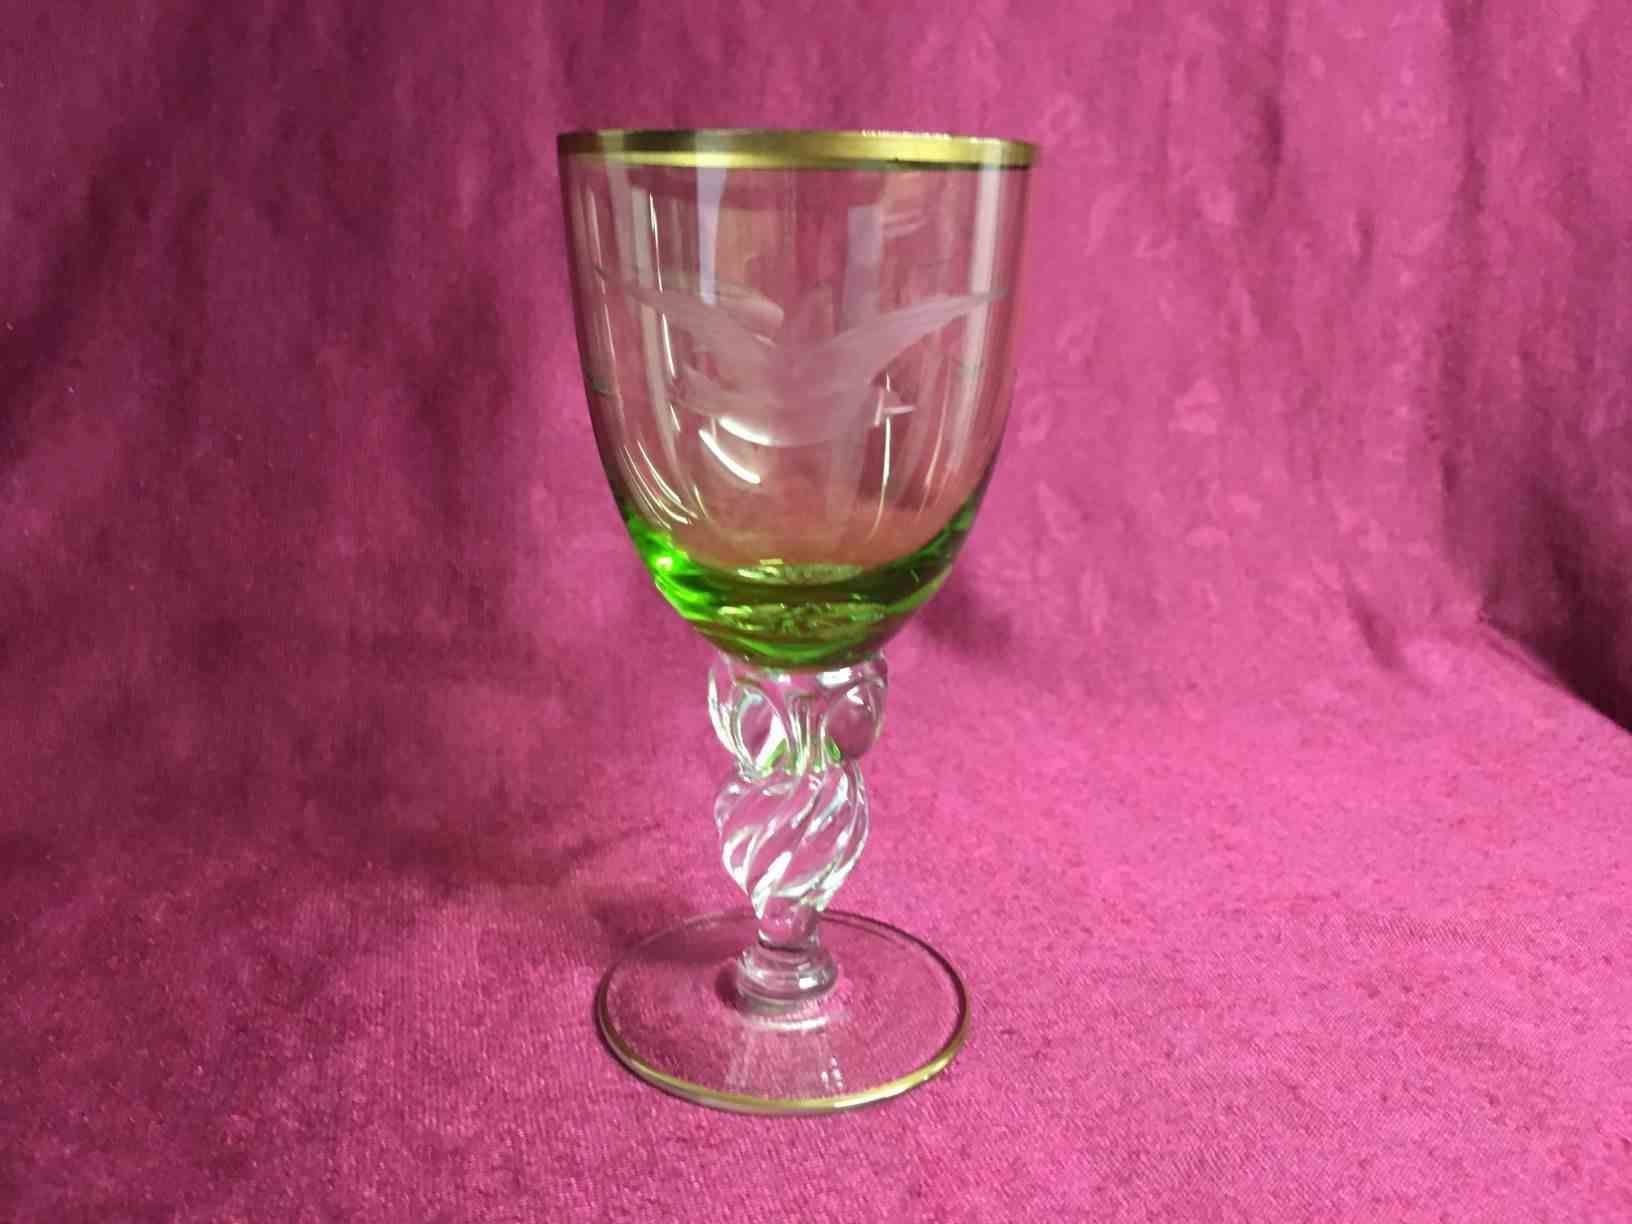 Lyngby glas - Mågeglas - Hvidvin med grøn kumme. Pris: 175,- Kr. pr. stk.